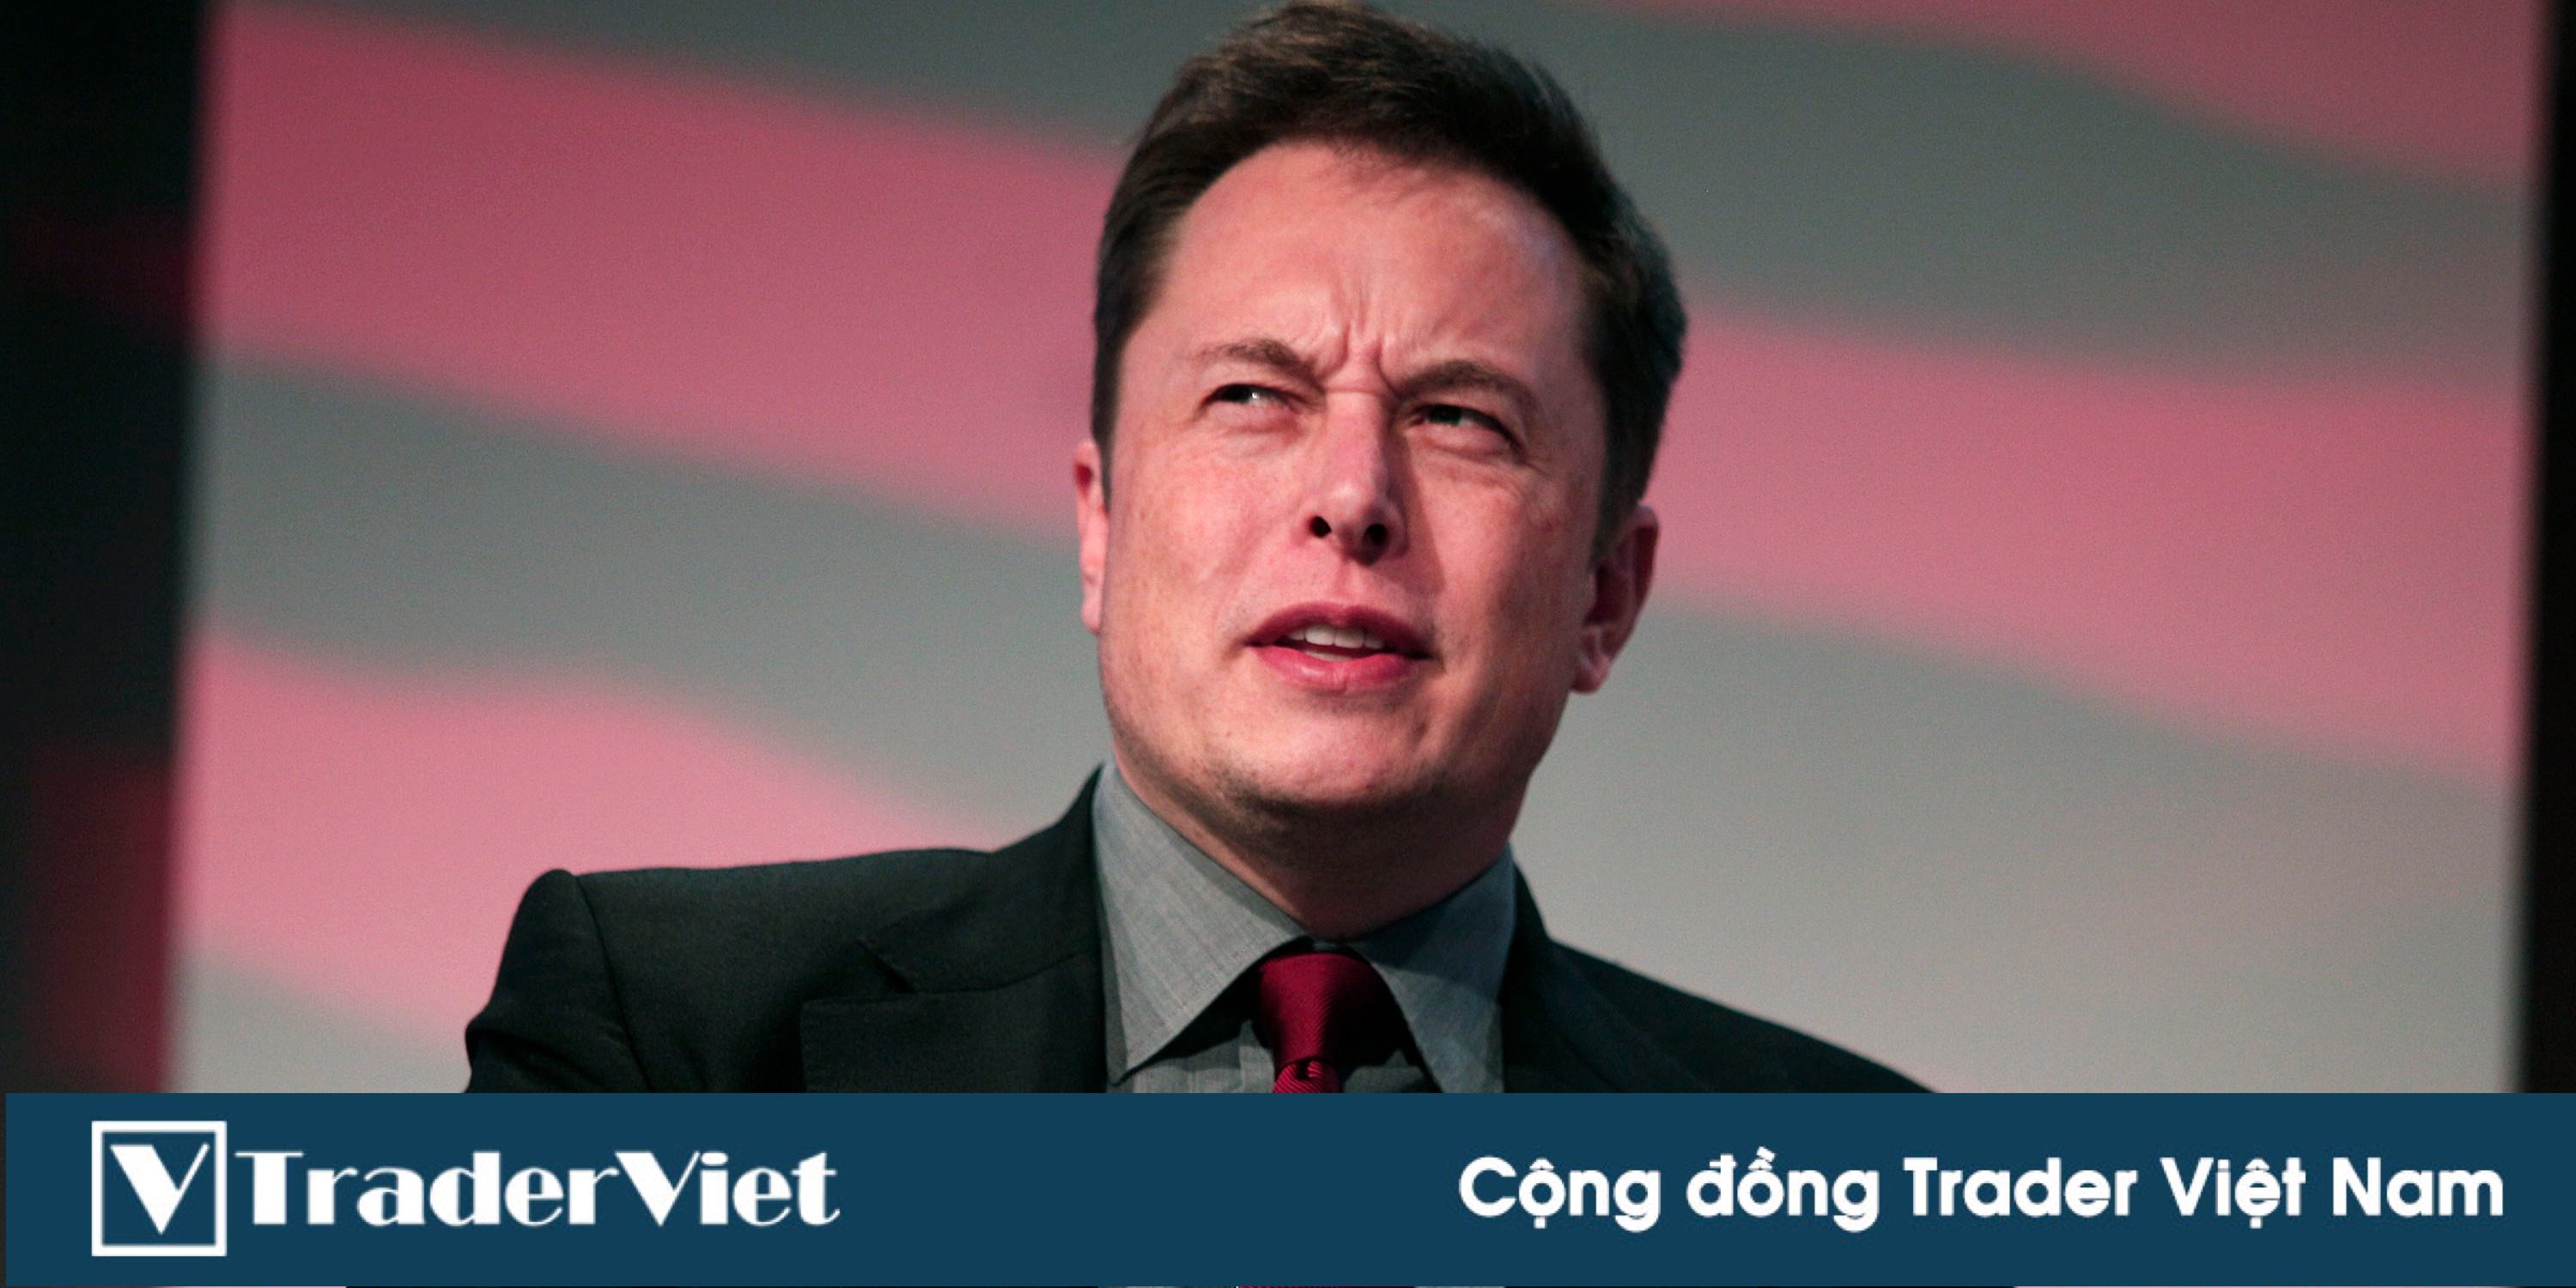 Elon Musk ơi, chúng tôi ngán ông lắm rồi!